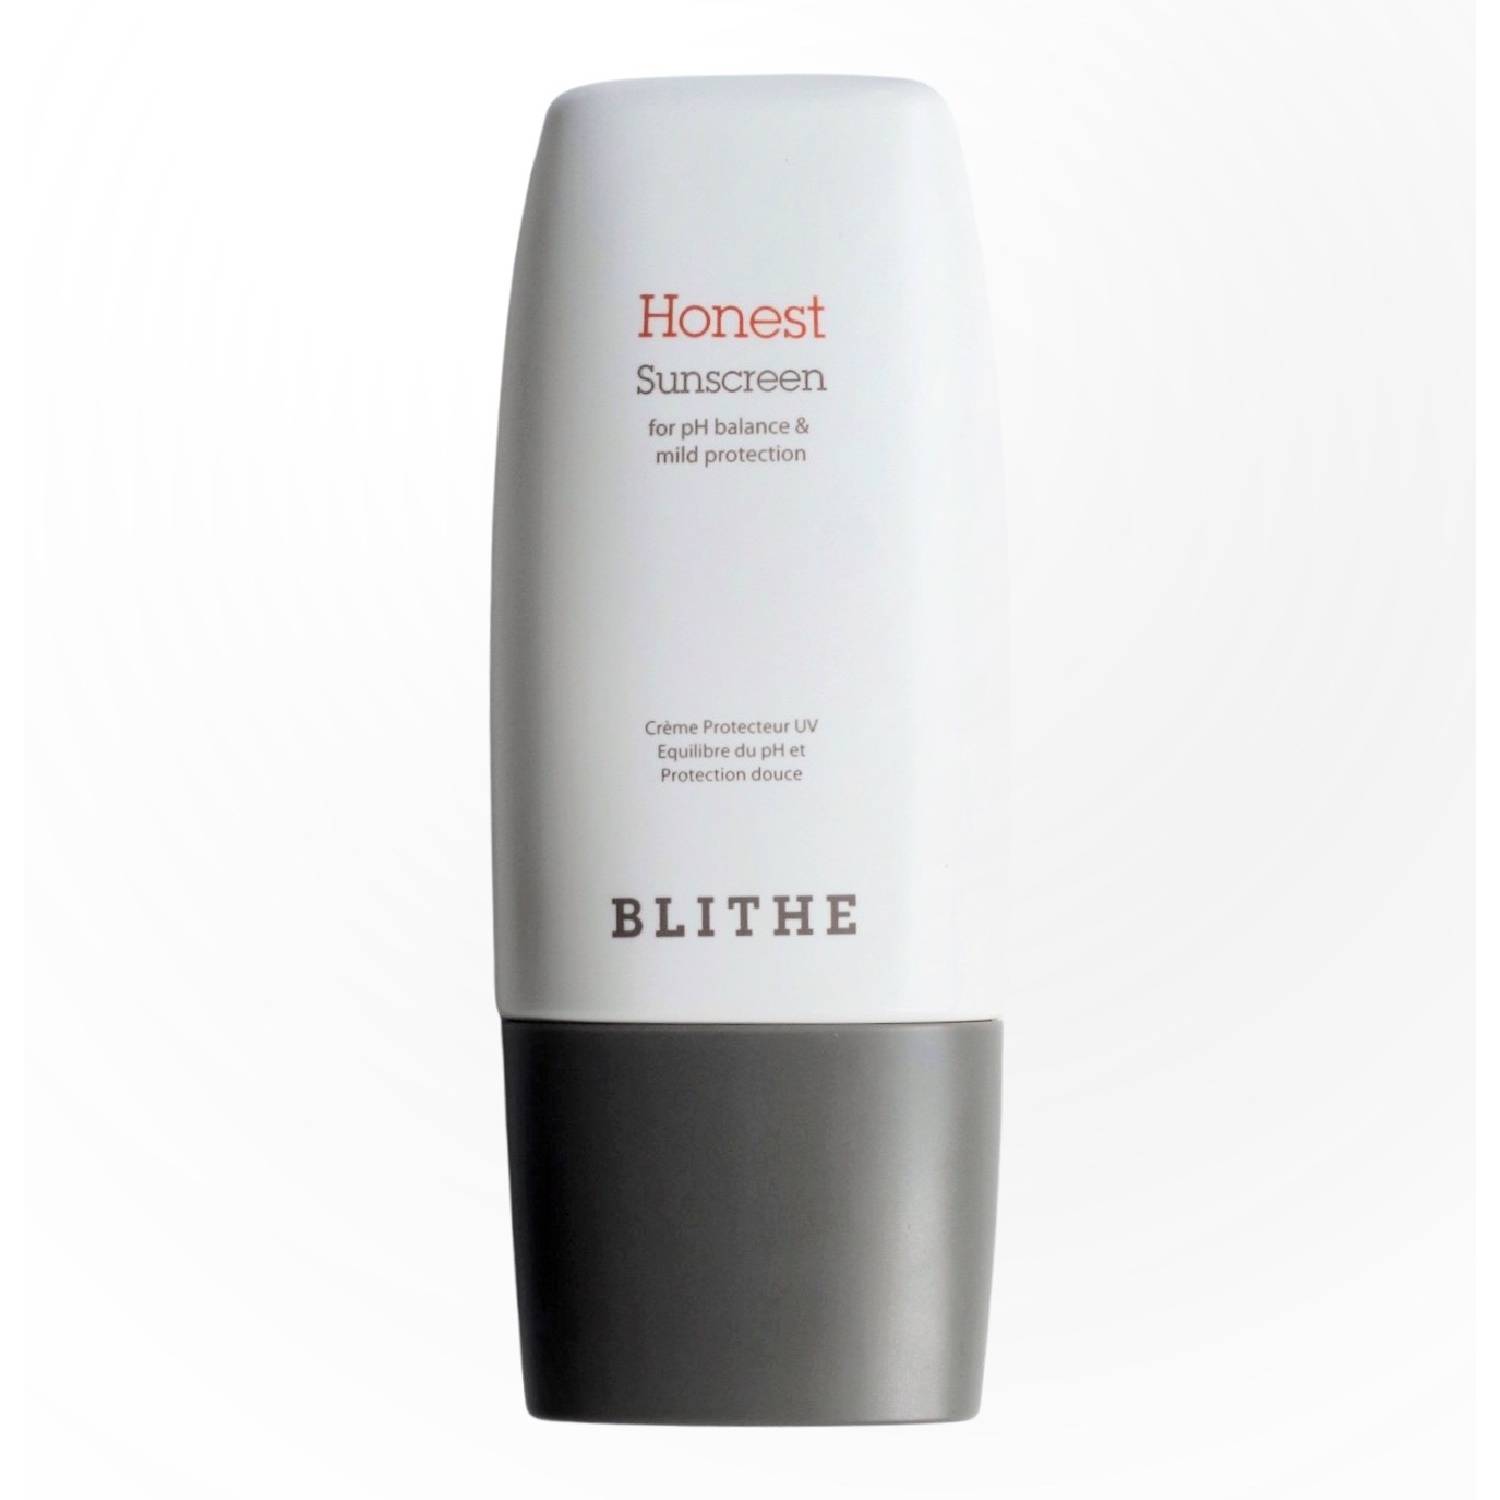 солнцезащитный крем spf50 blithe honest sunscreen 50 мл Blithe Солнцезащитный крем UV Protector Honest SPF50+ PA++++ , 50 мл (Blithe, Sunscreen)